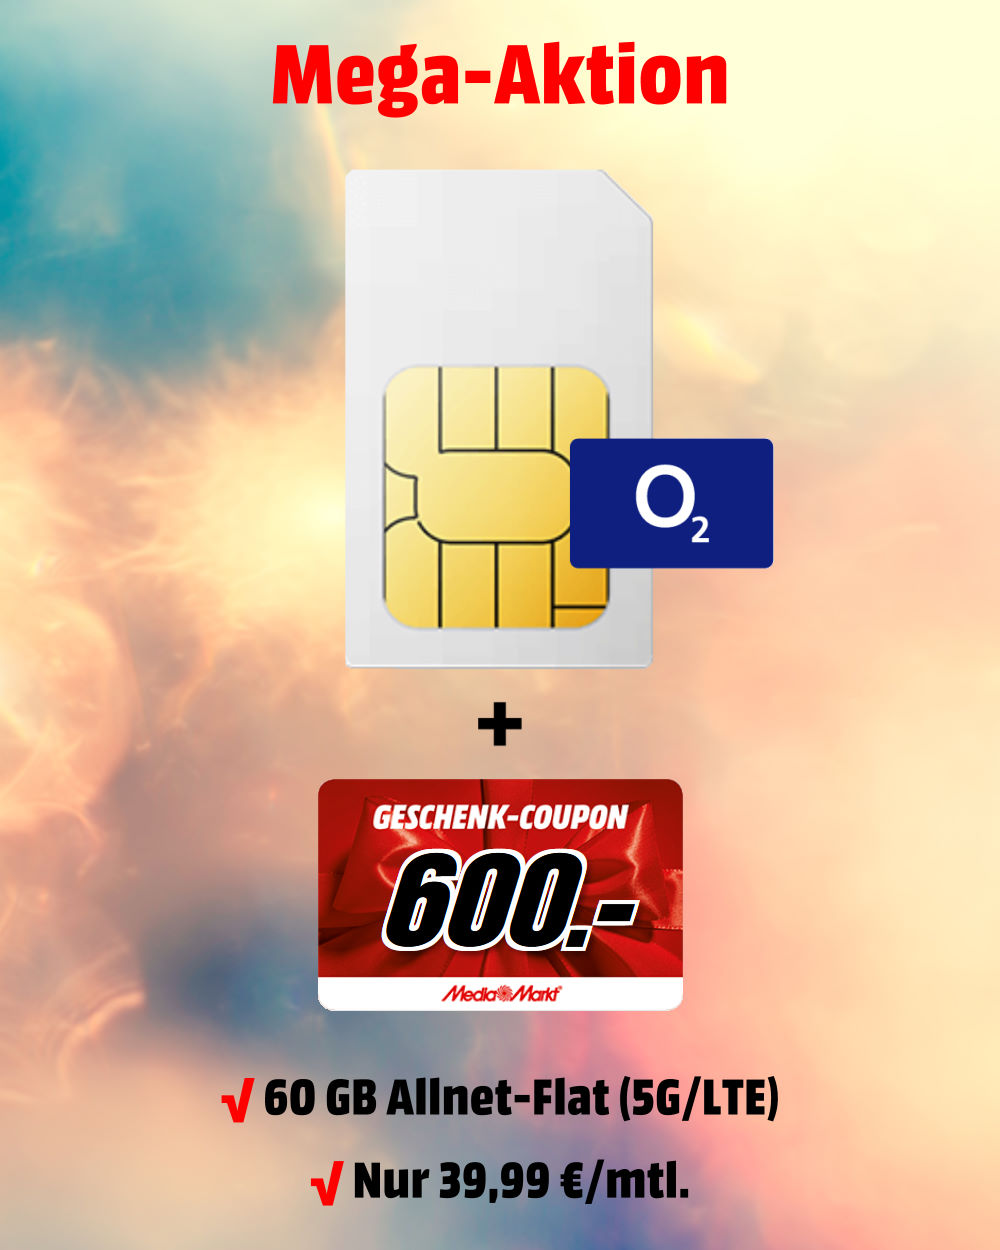 60 GB 5G-LTE Allnet-Flat mit 600 € MediaMarkt-Coupon zum absoluten Bestpreis